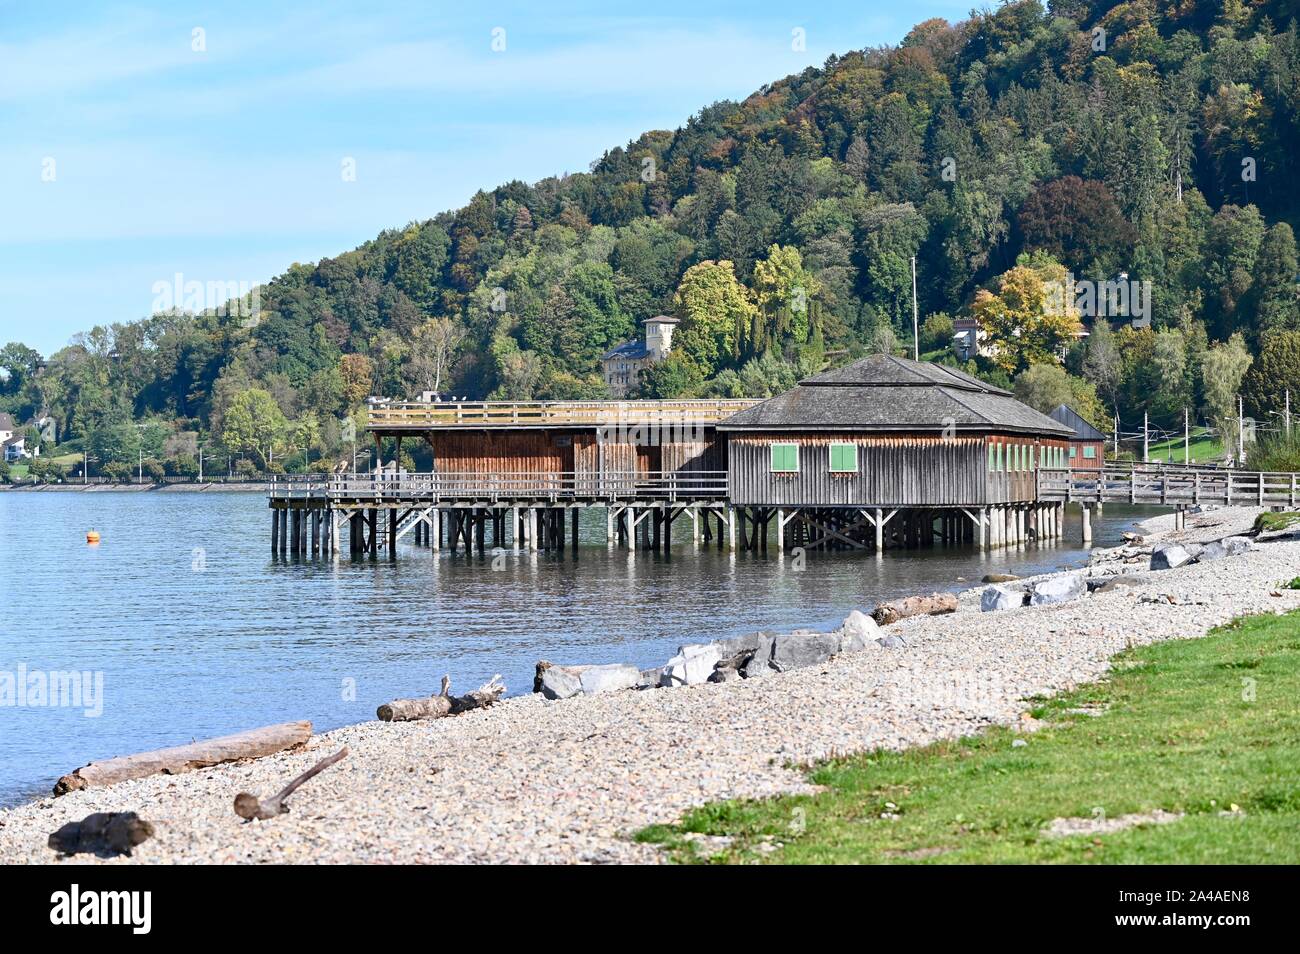 die Bregenzer 'Mili'- das ehemalige Militärschwimmbad am Bodensee Stock Photo